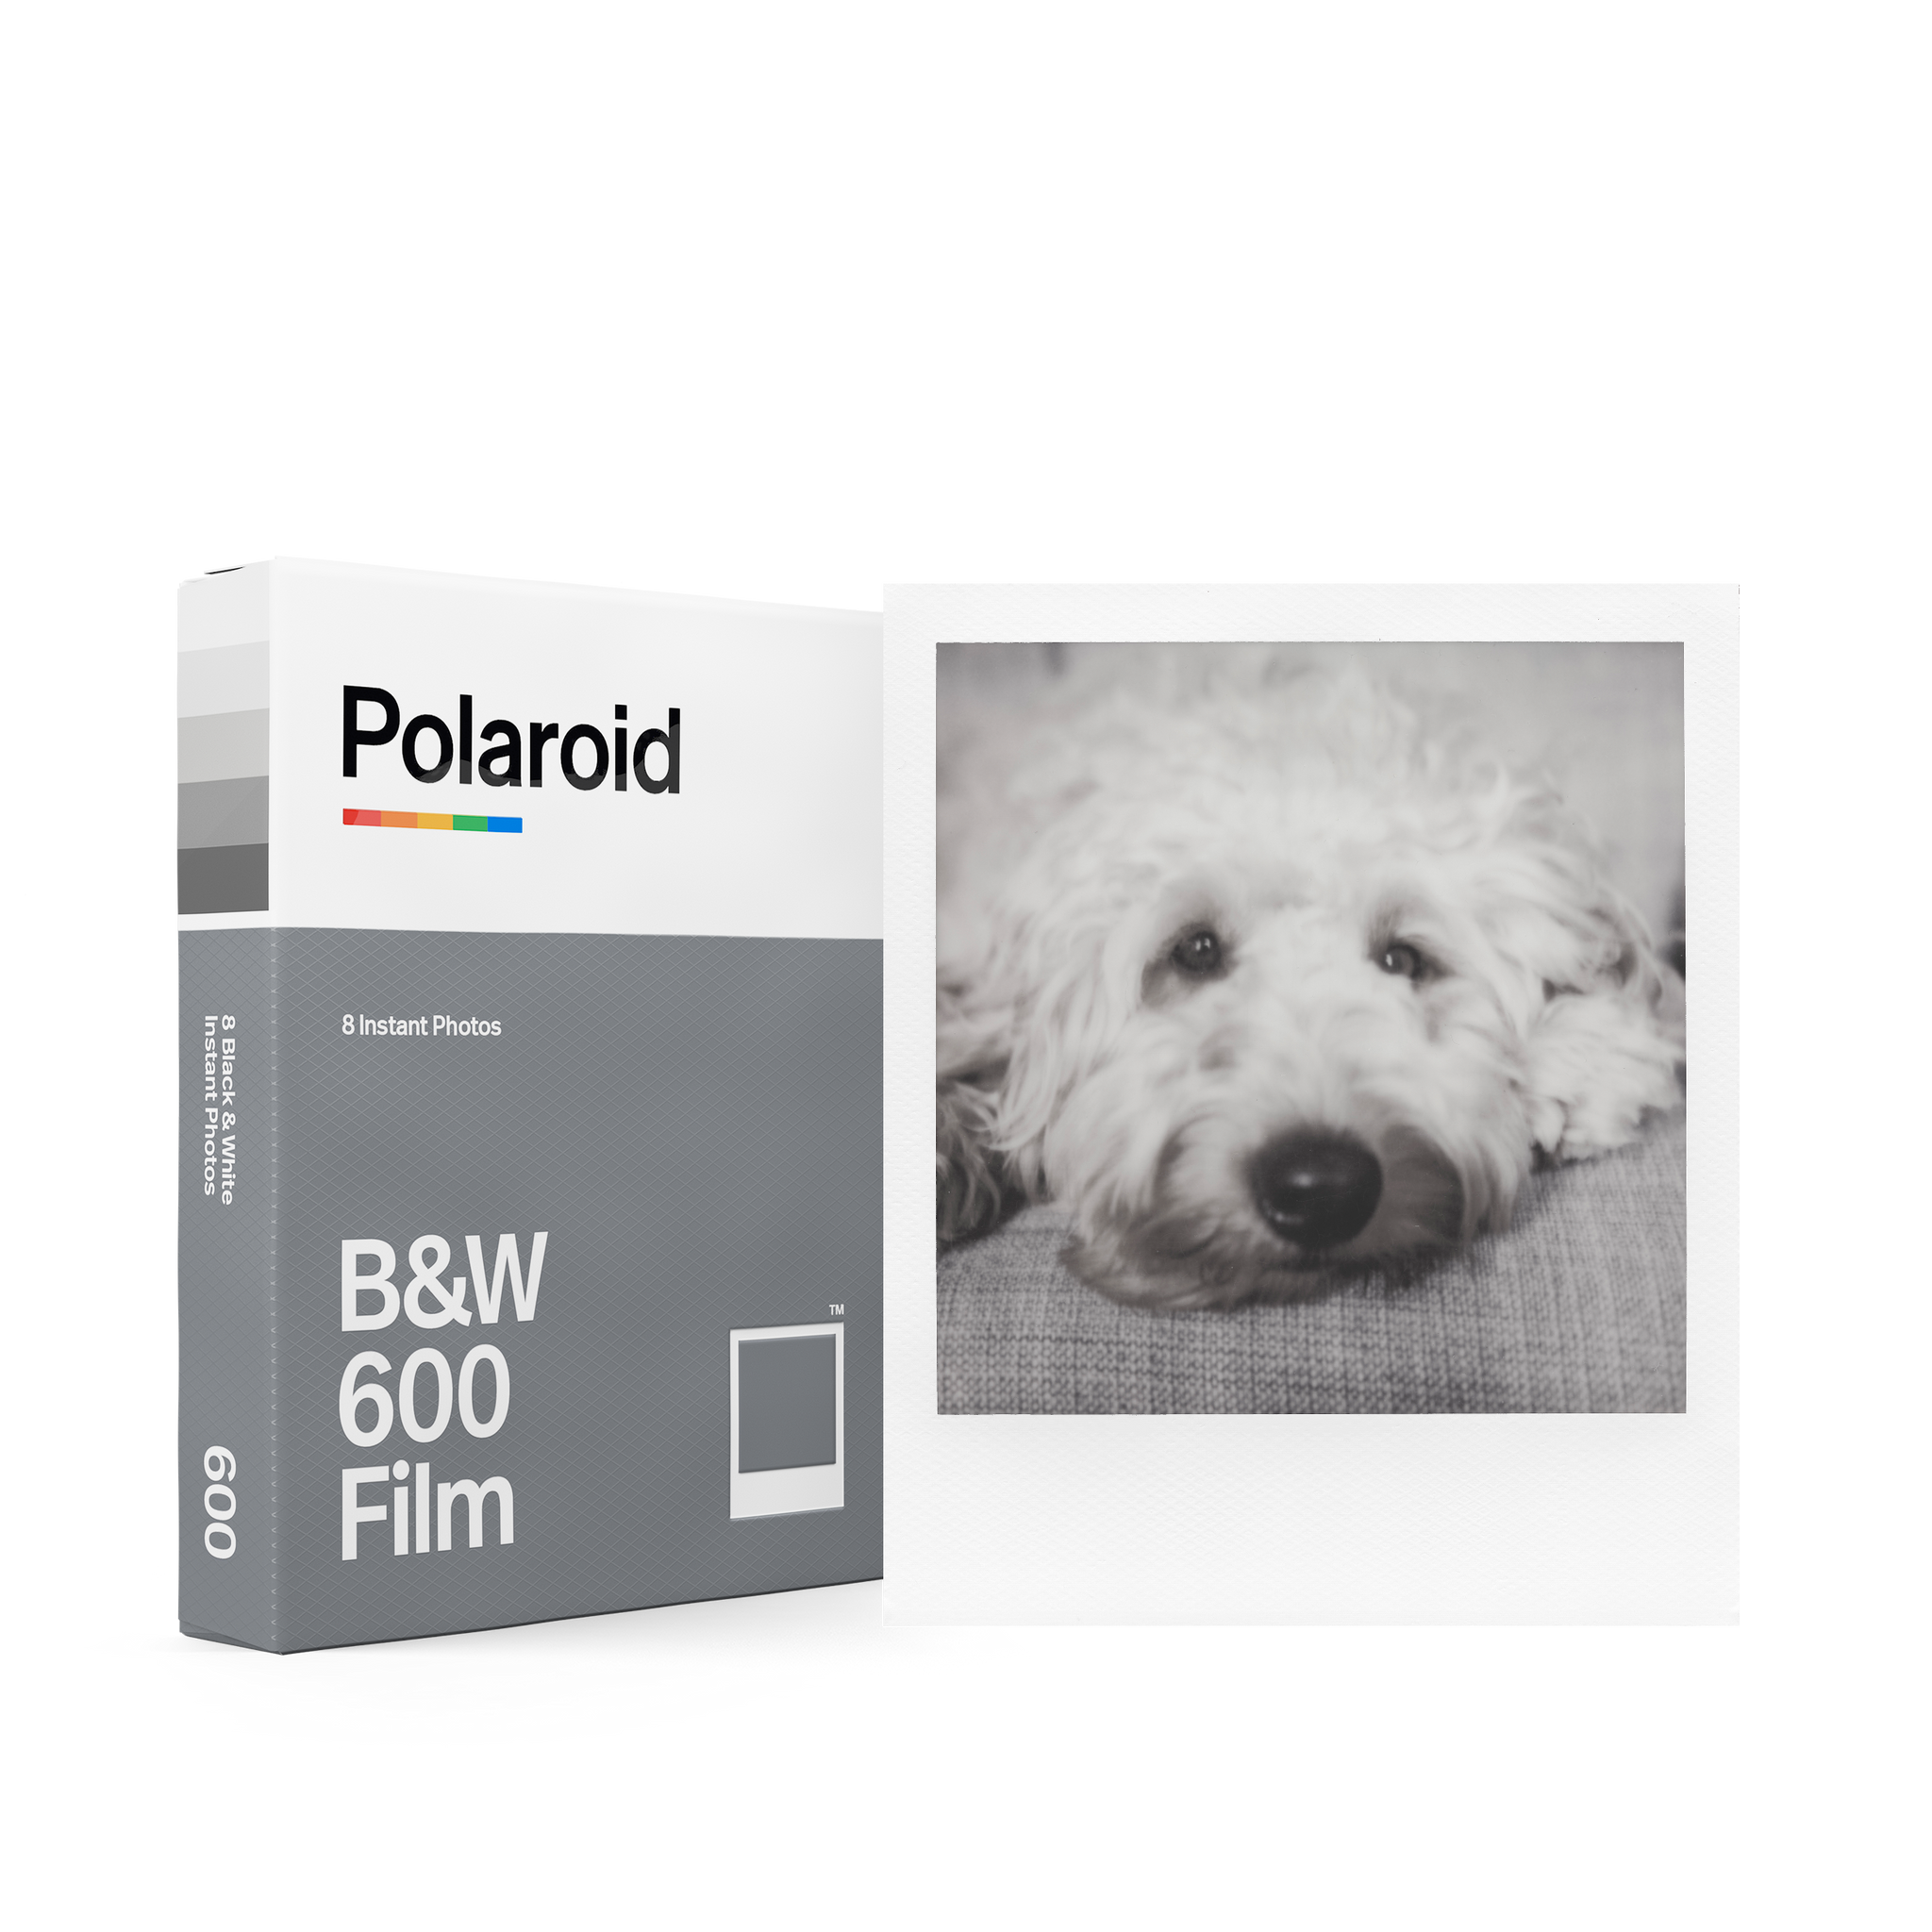 Polaroid B&W 600 Film White Frames (6003)